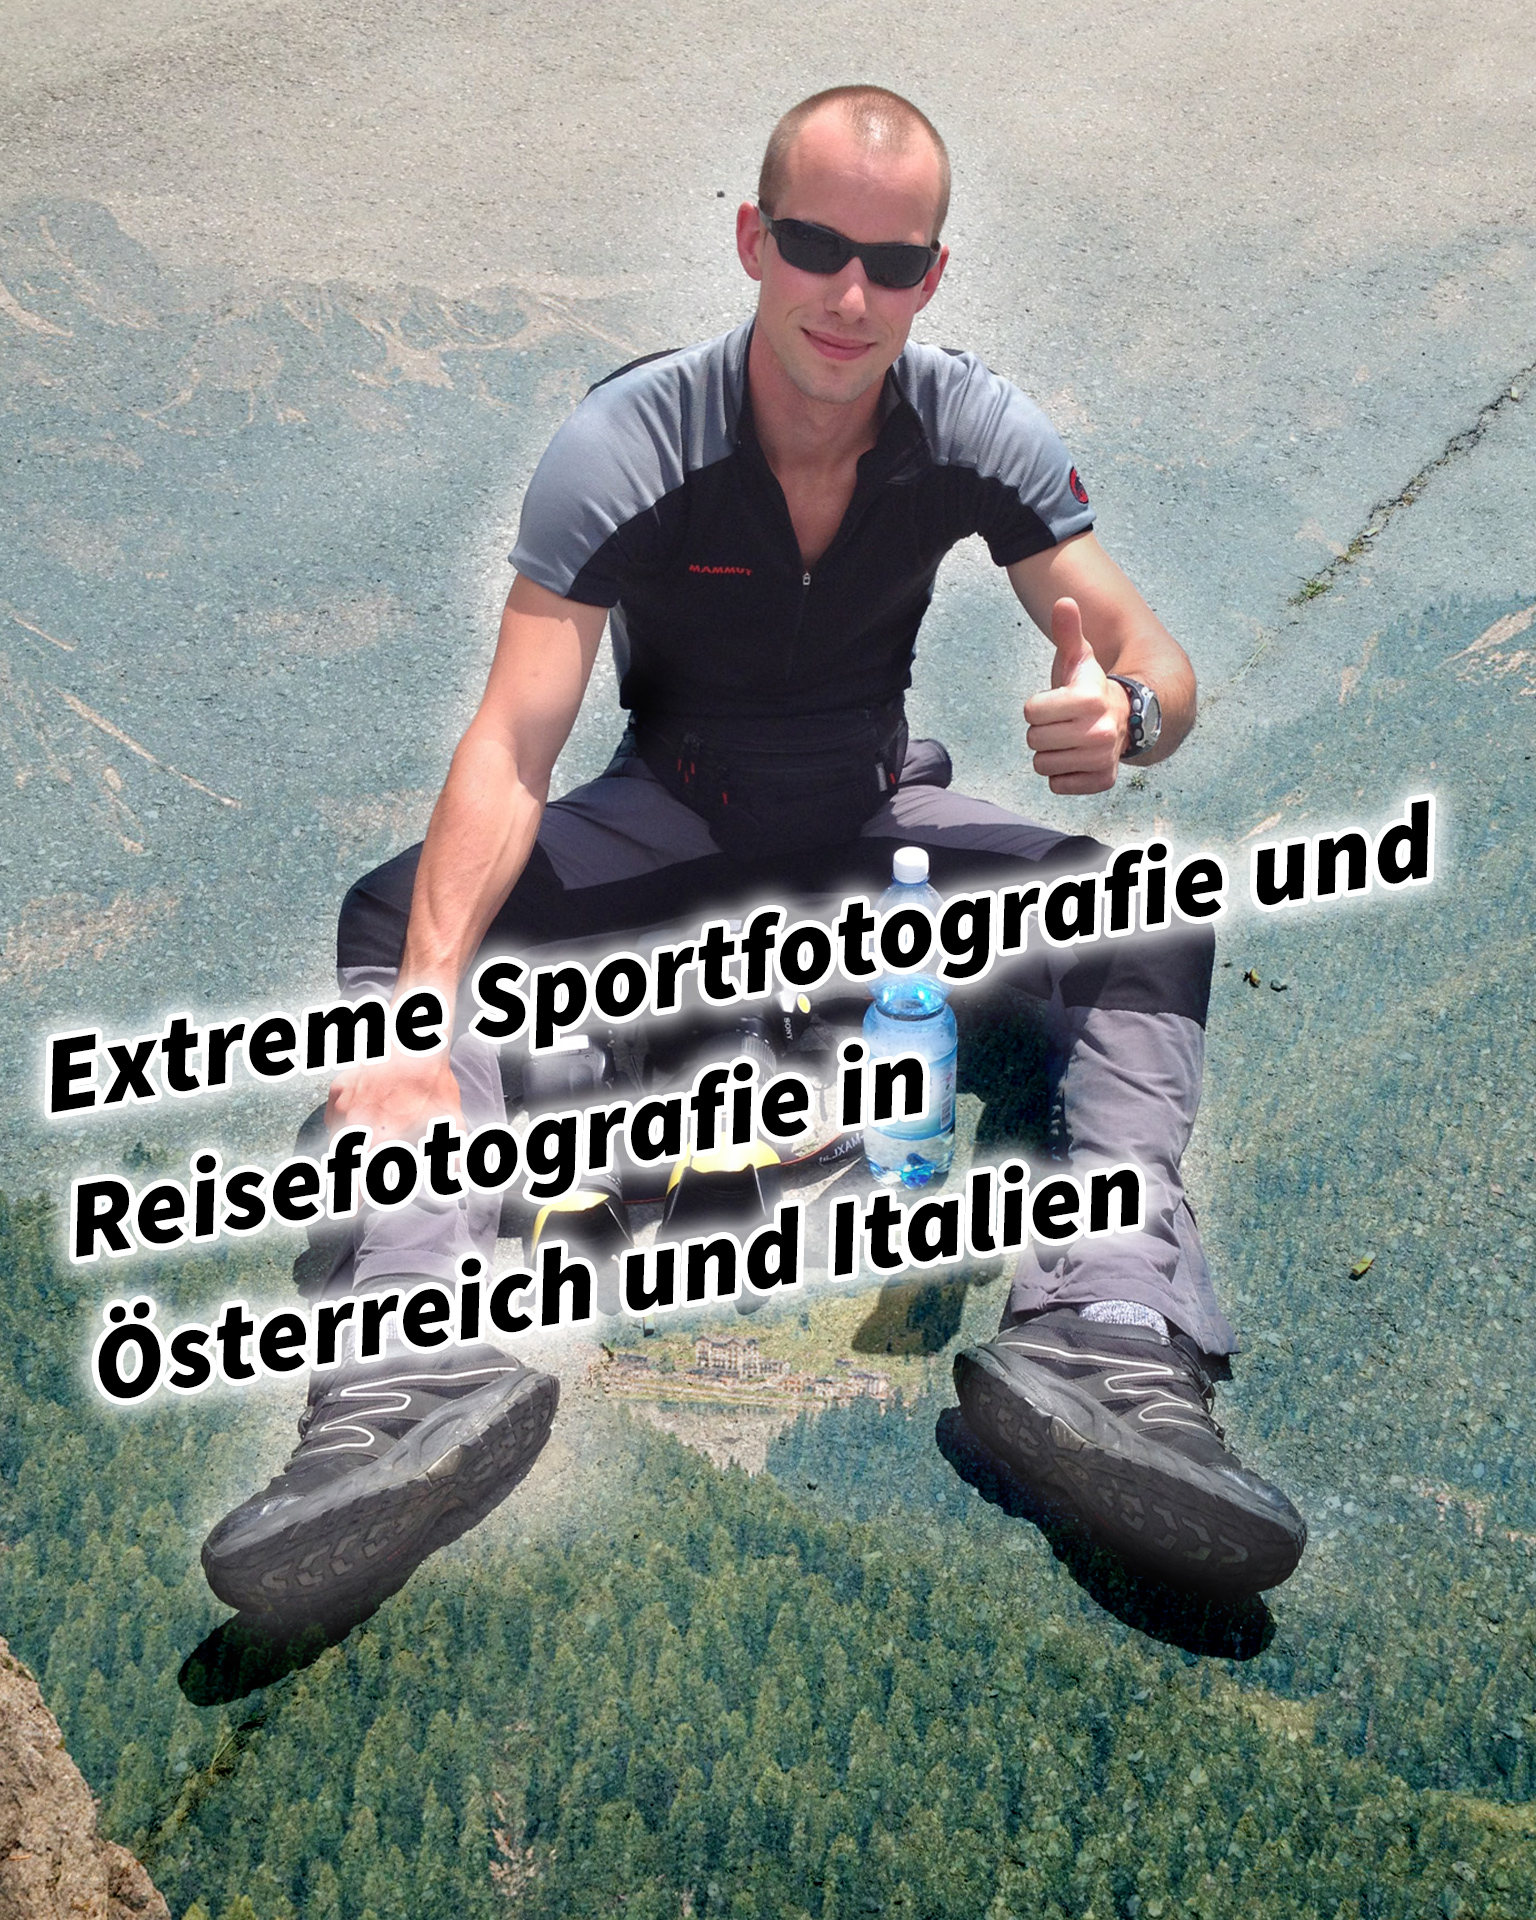 Extreme Sportfotografie und Reisefotografie in Österreich und Italien